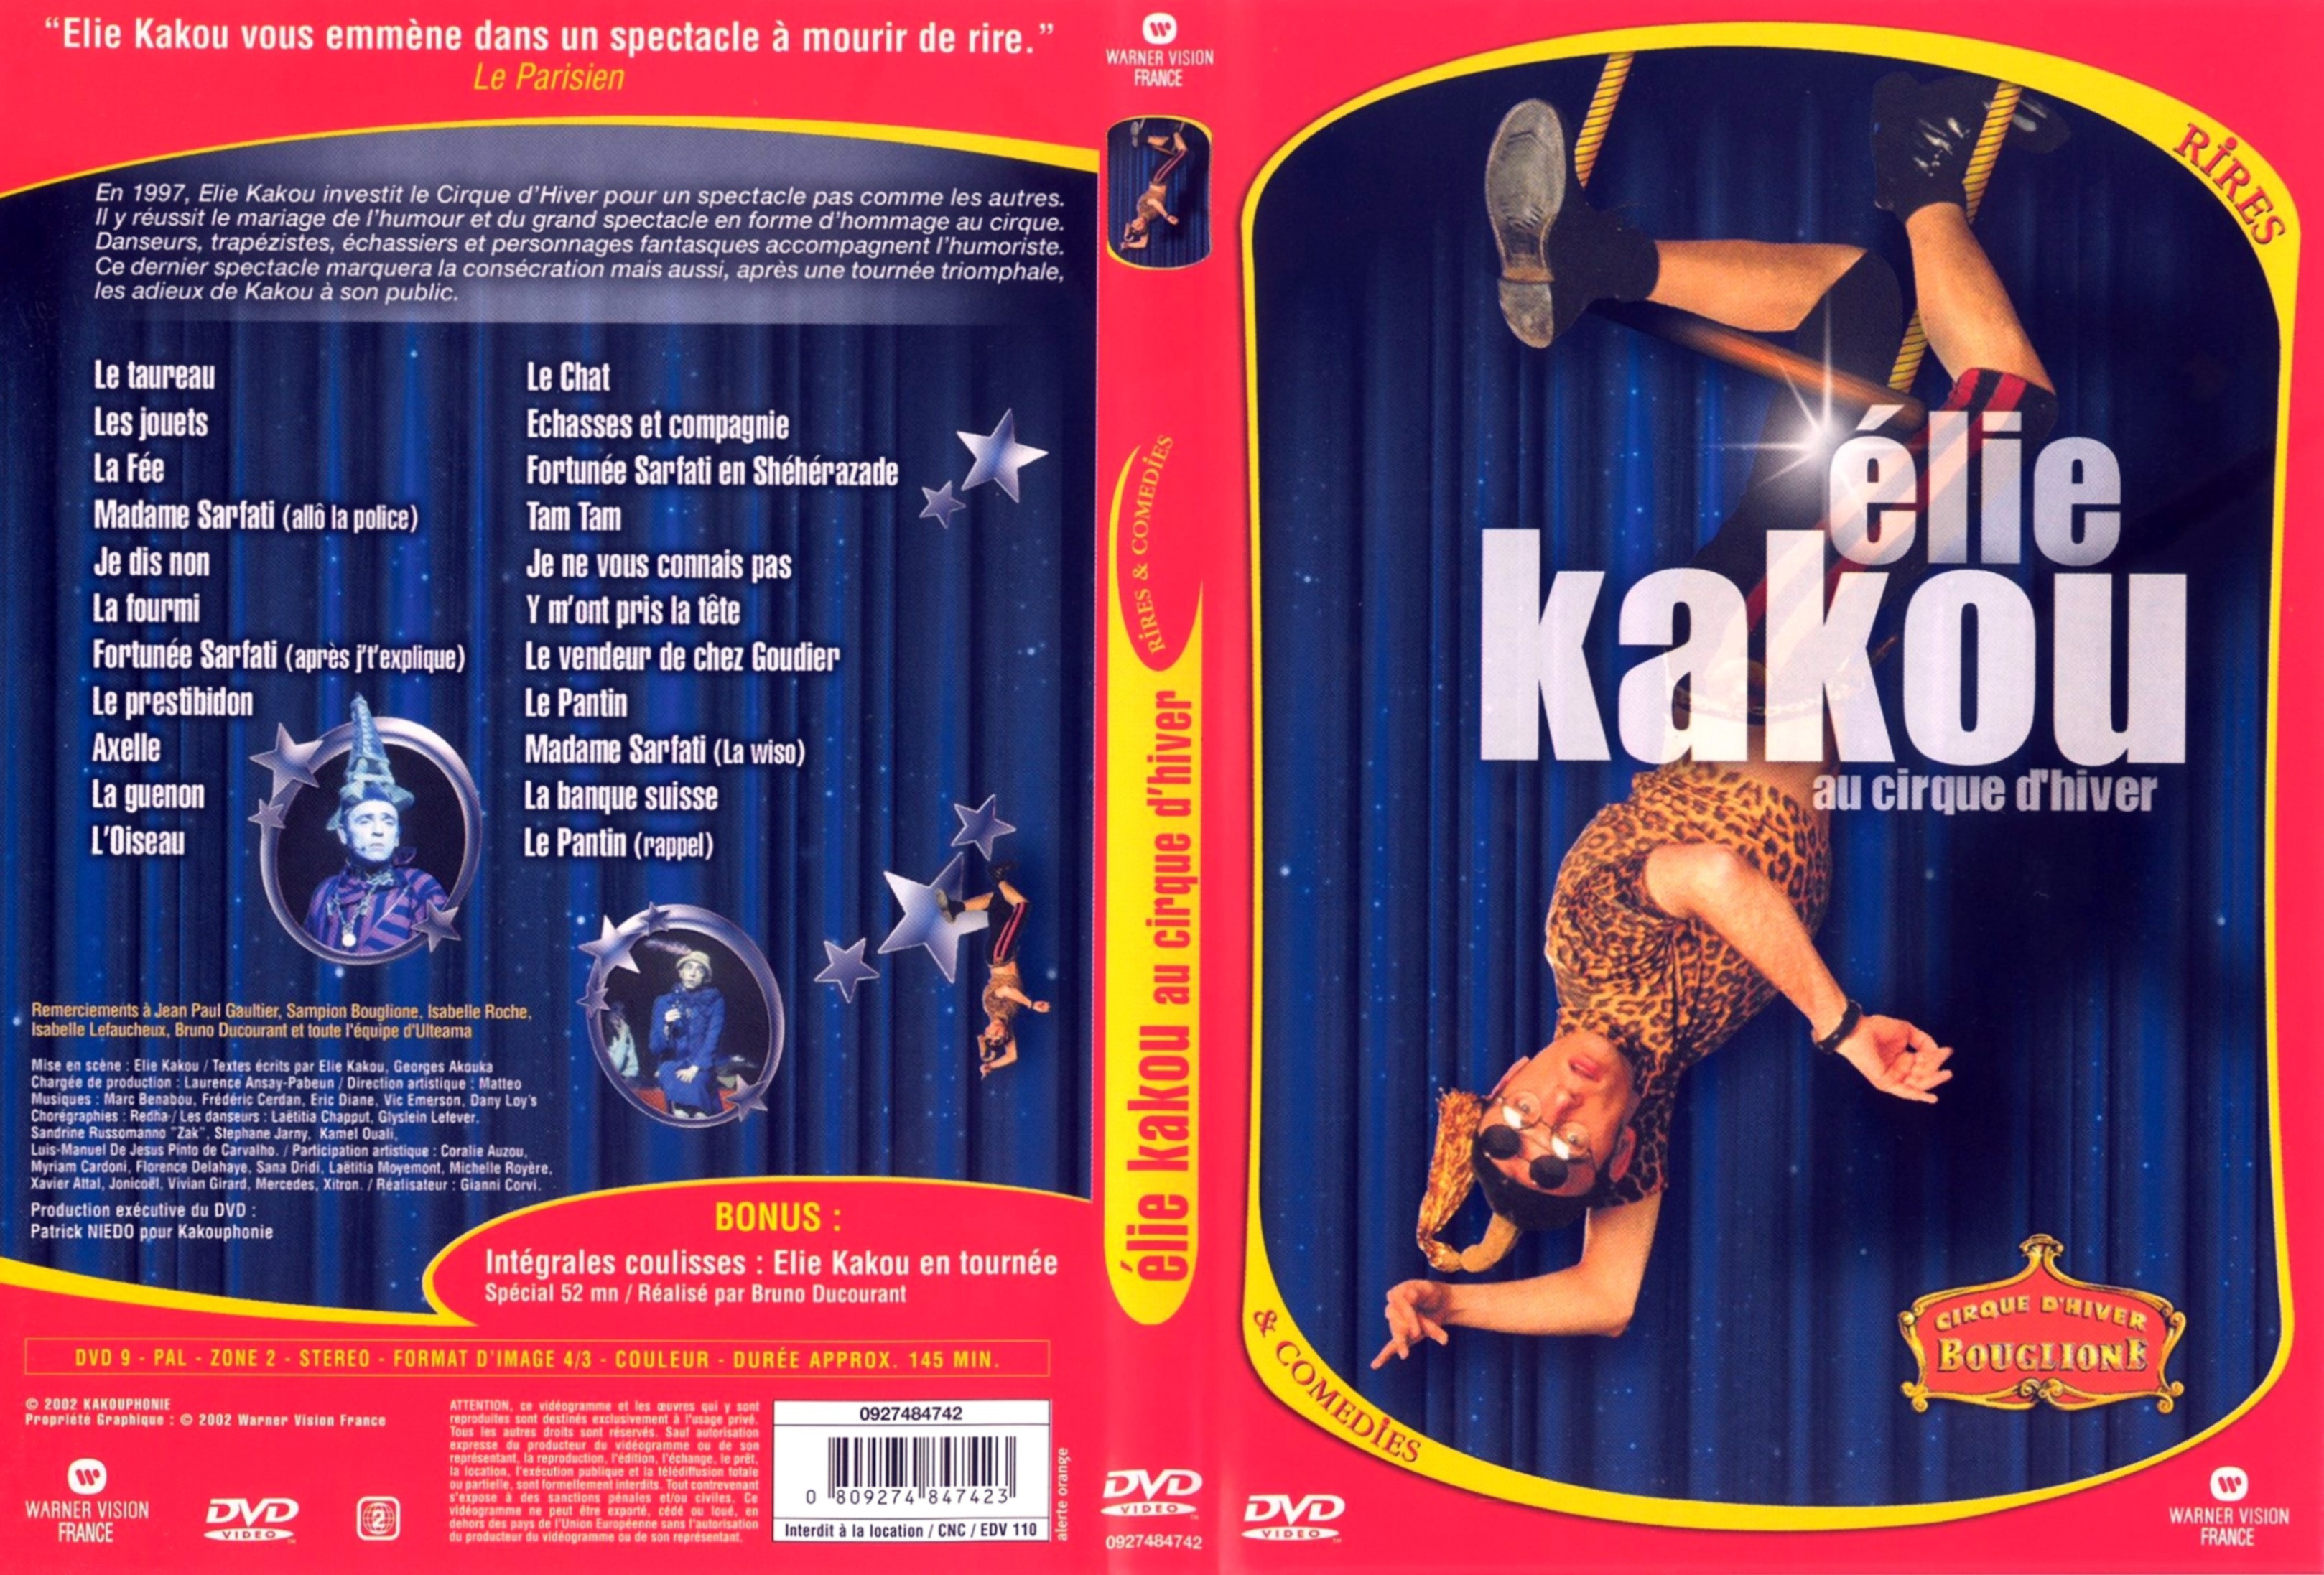 Jaquette DVD Elie kakou au cirque d